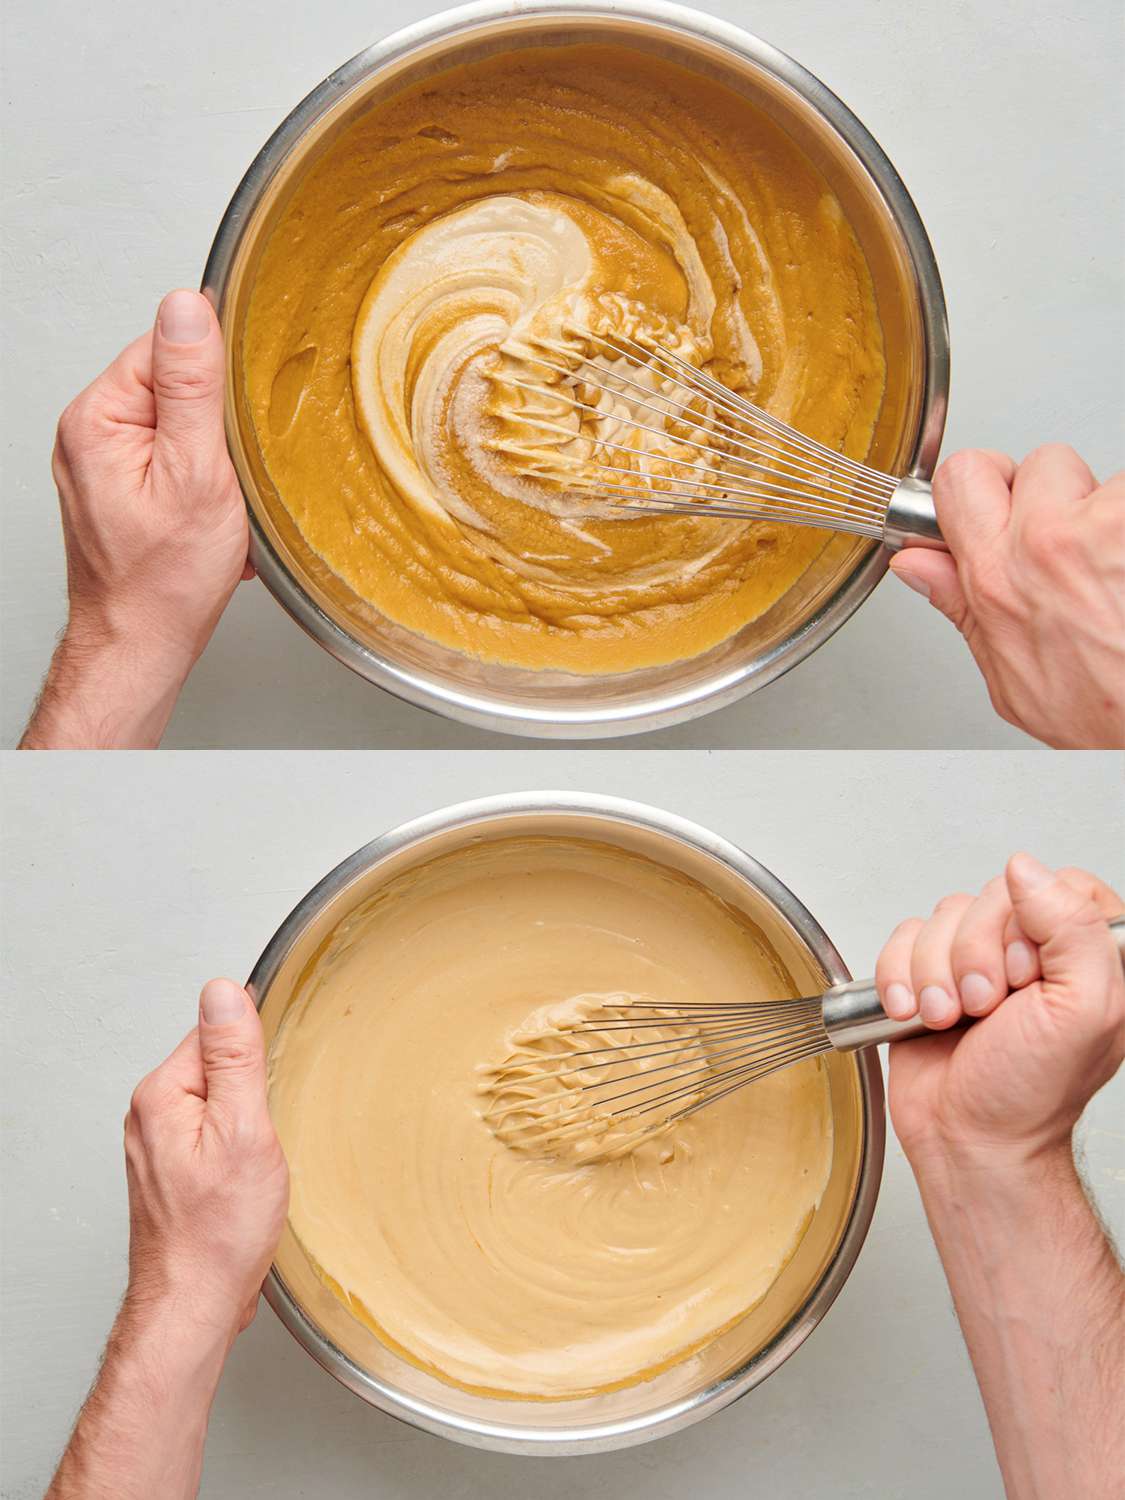 两幅图像的拼贴画。上图显示，芝麻酱被搅拌到一个大碗里仍然热的鹰嘴豆混合物中。下图显示的是金属碗里已经成型的鹰嘴豆泥。